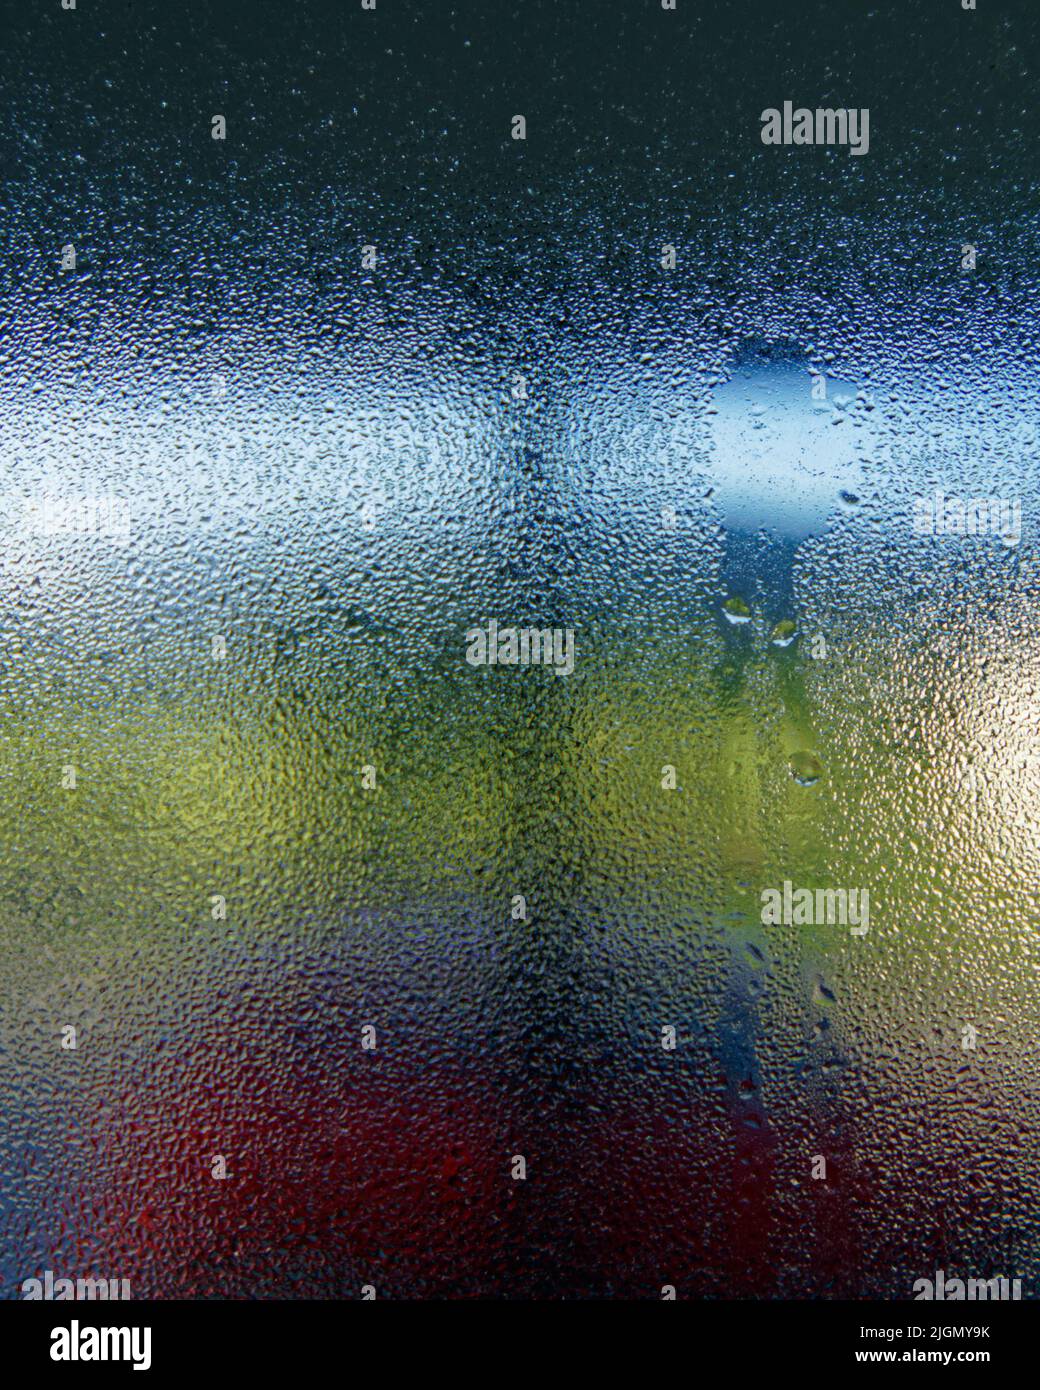 Kondenswasser, das in einem kalten, feuchten Haus durch das Innere eines Fensters läuft. Stockfoto